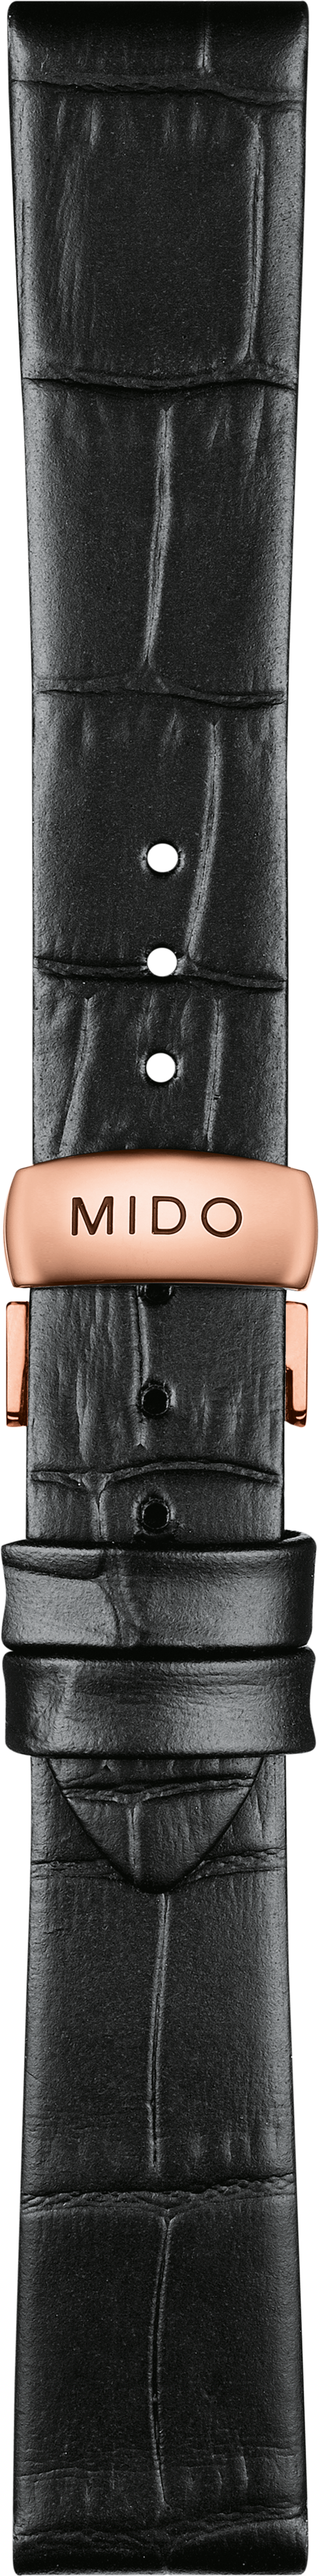 Mido Belluna schwarzes Rindsleder-Armband